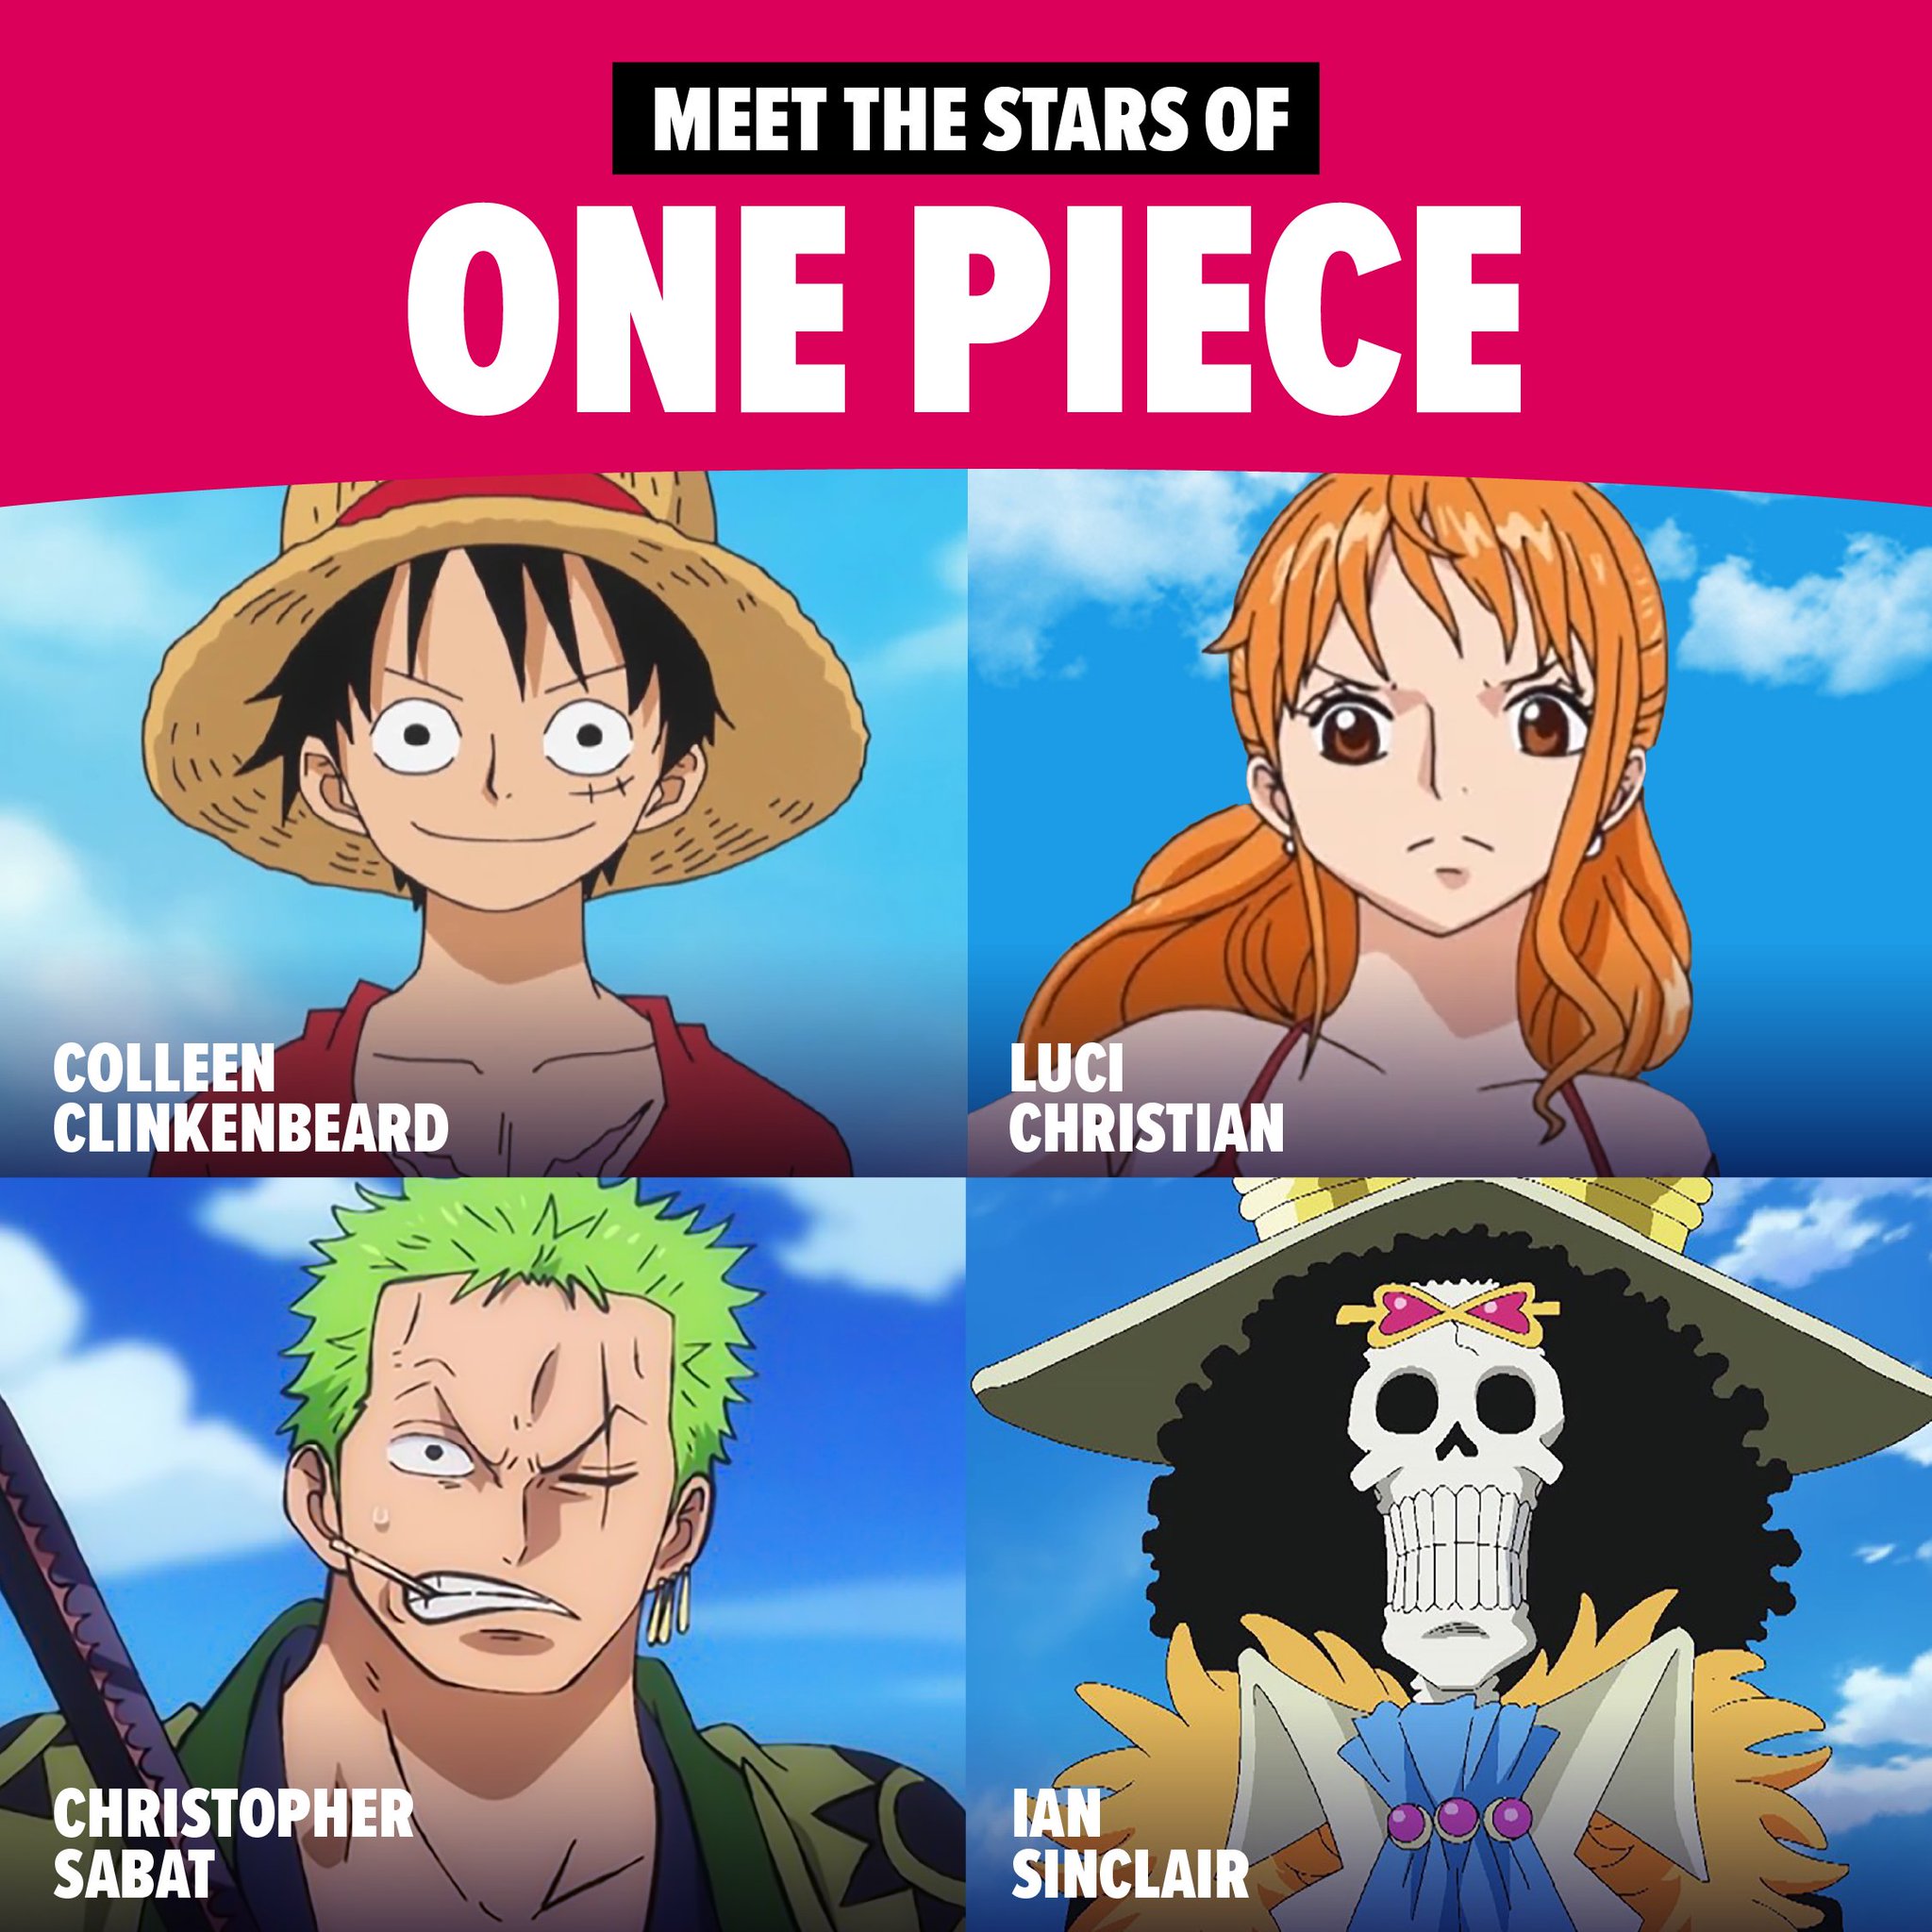 One Piece: Heart of Gold Colleen Clinkenbeard; Luci Christian